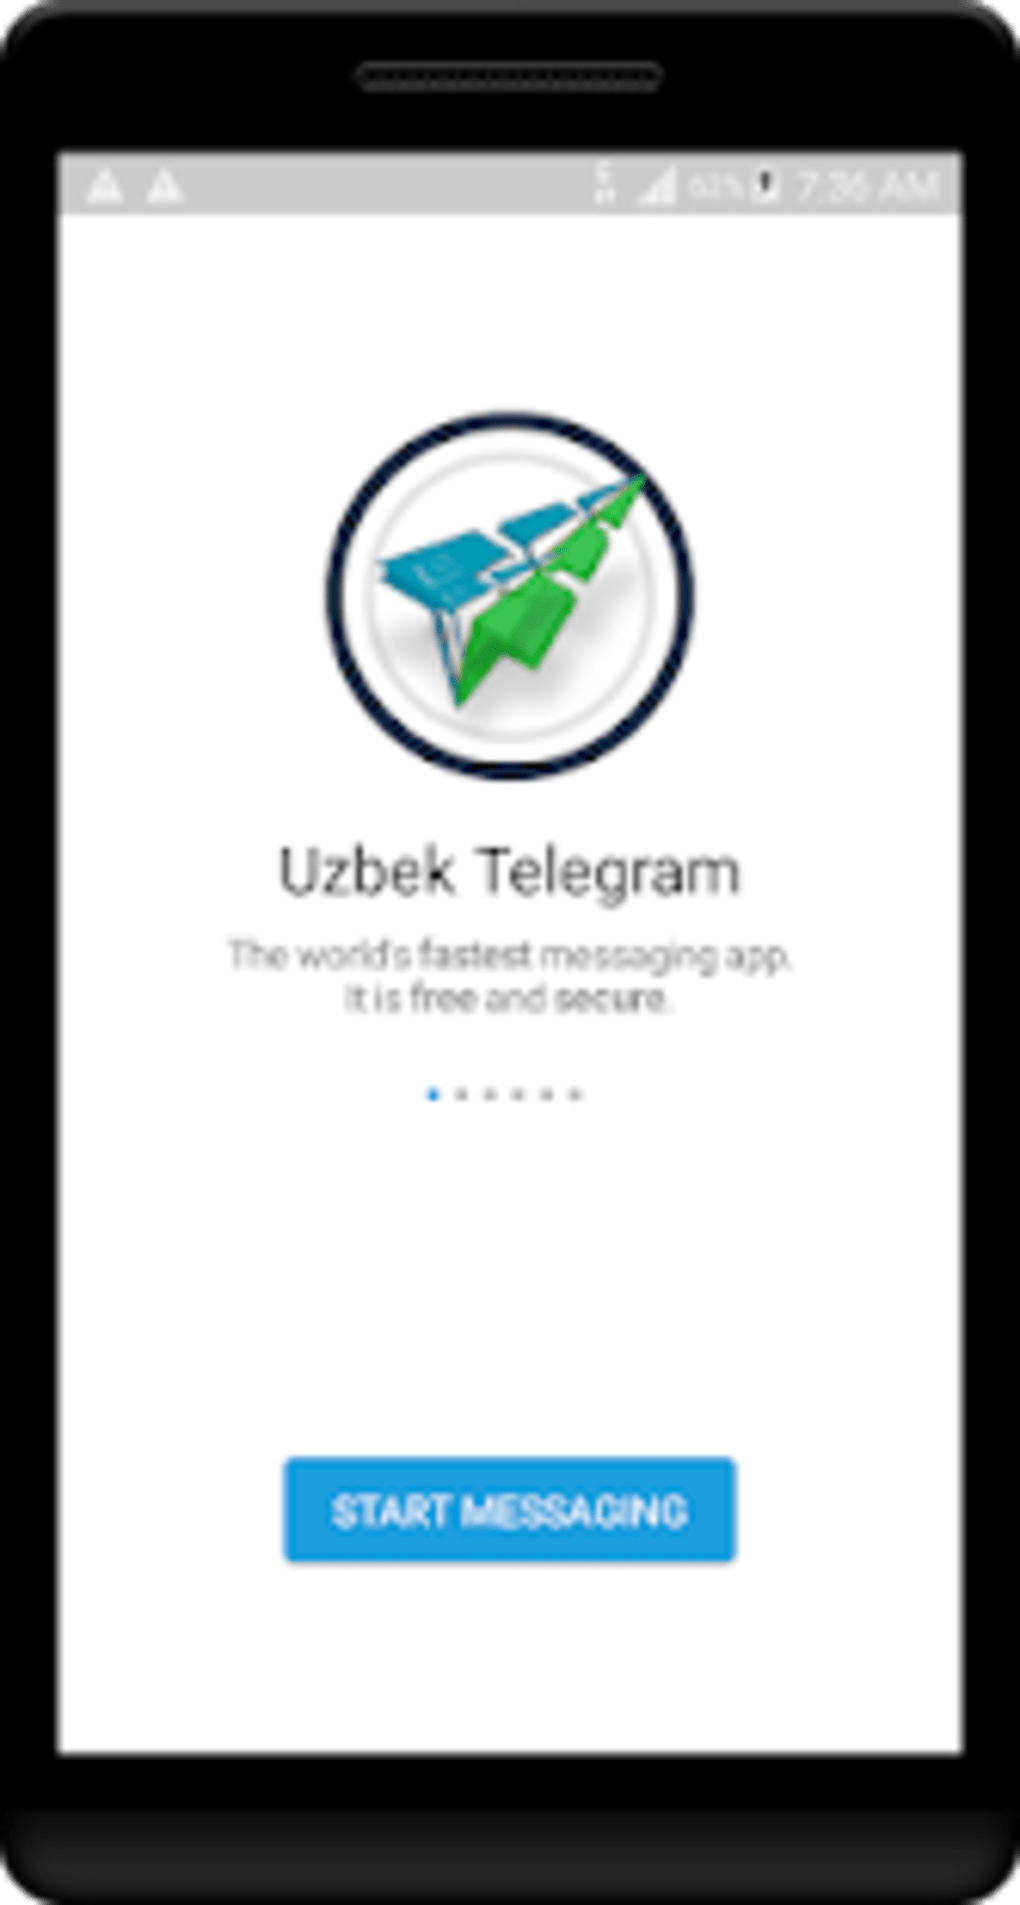 Скачать телеграмм бесплатно на русском языке на телефон андроид новая версия фото 100